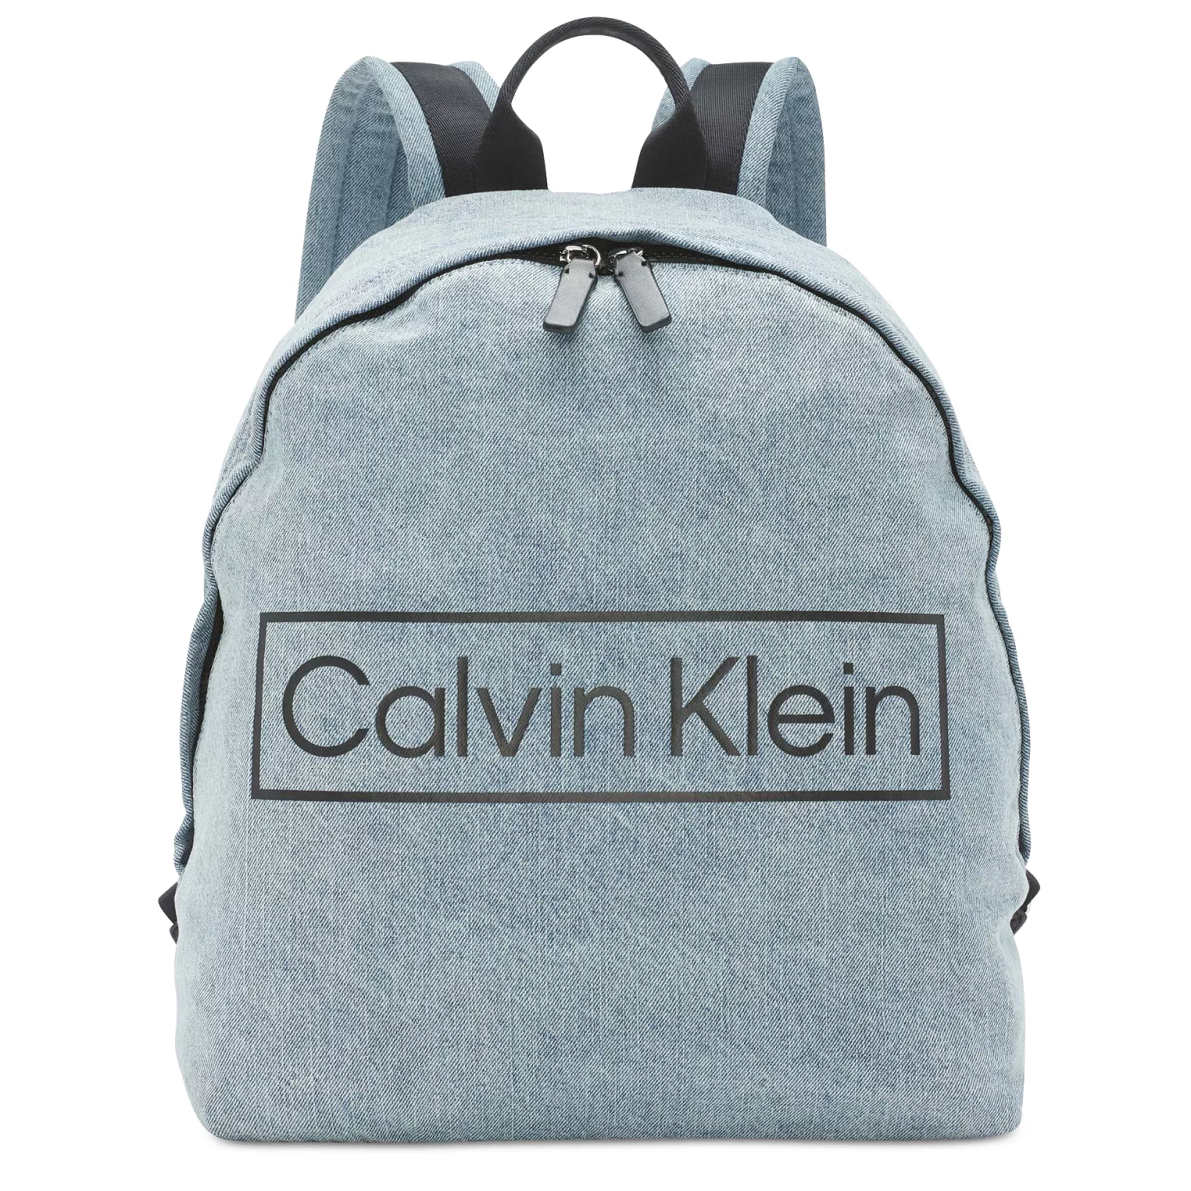 Calvin Klein 牛仔布拉鍊後背包 休閒後背包 後背包 C74555 CK(現貨)▶指定Outlet商品5折起☆現貨